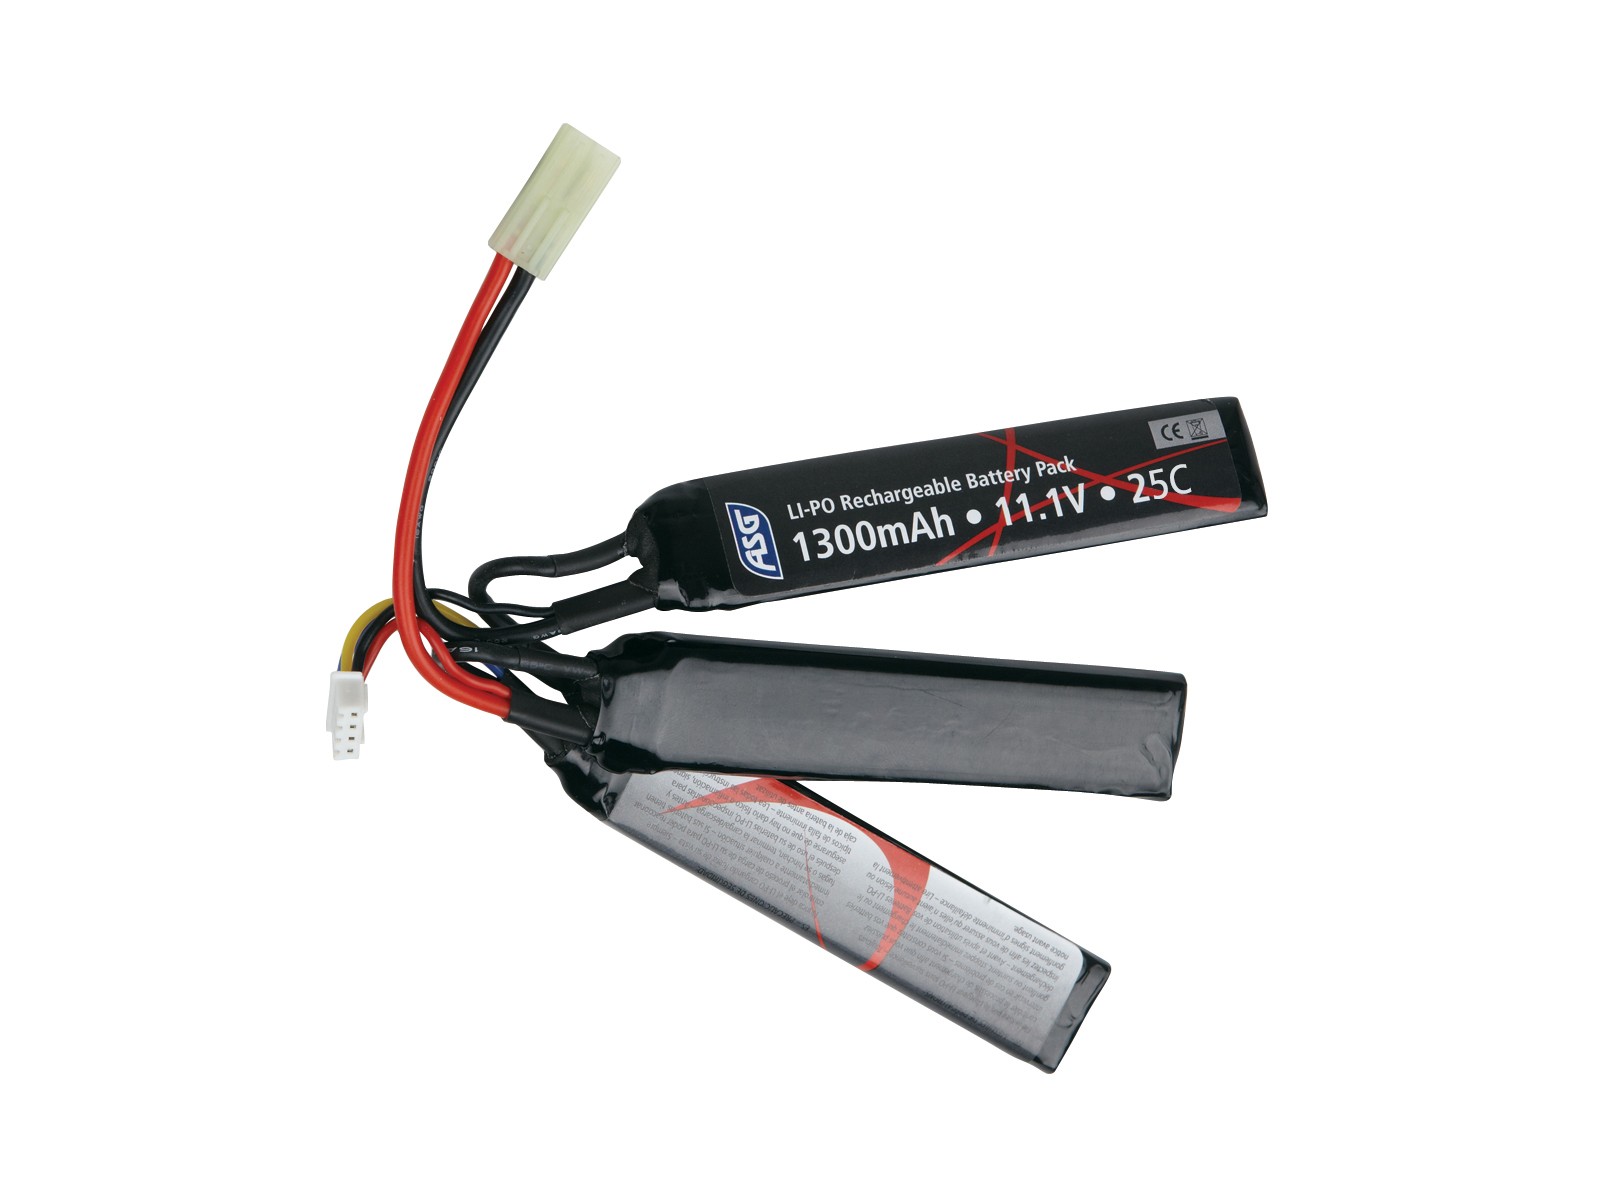 ASG - Auto-Stop Chargeur de batterie LiPo / LiFe - Noir - Elite Airsoft